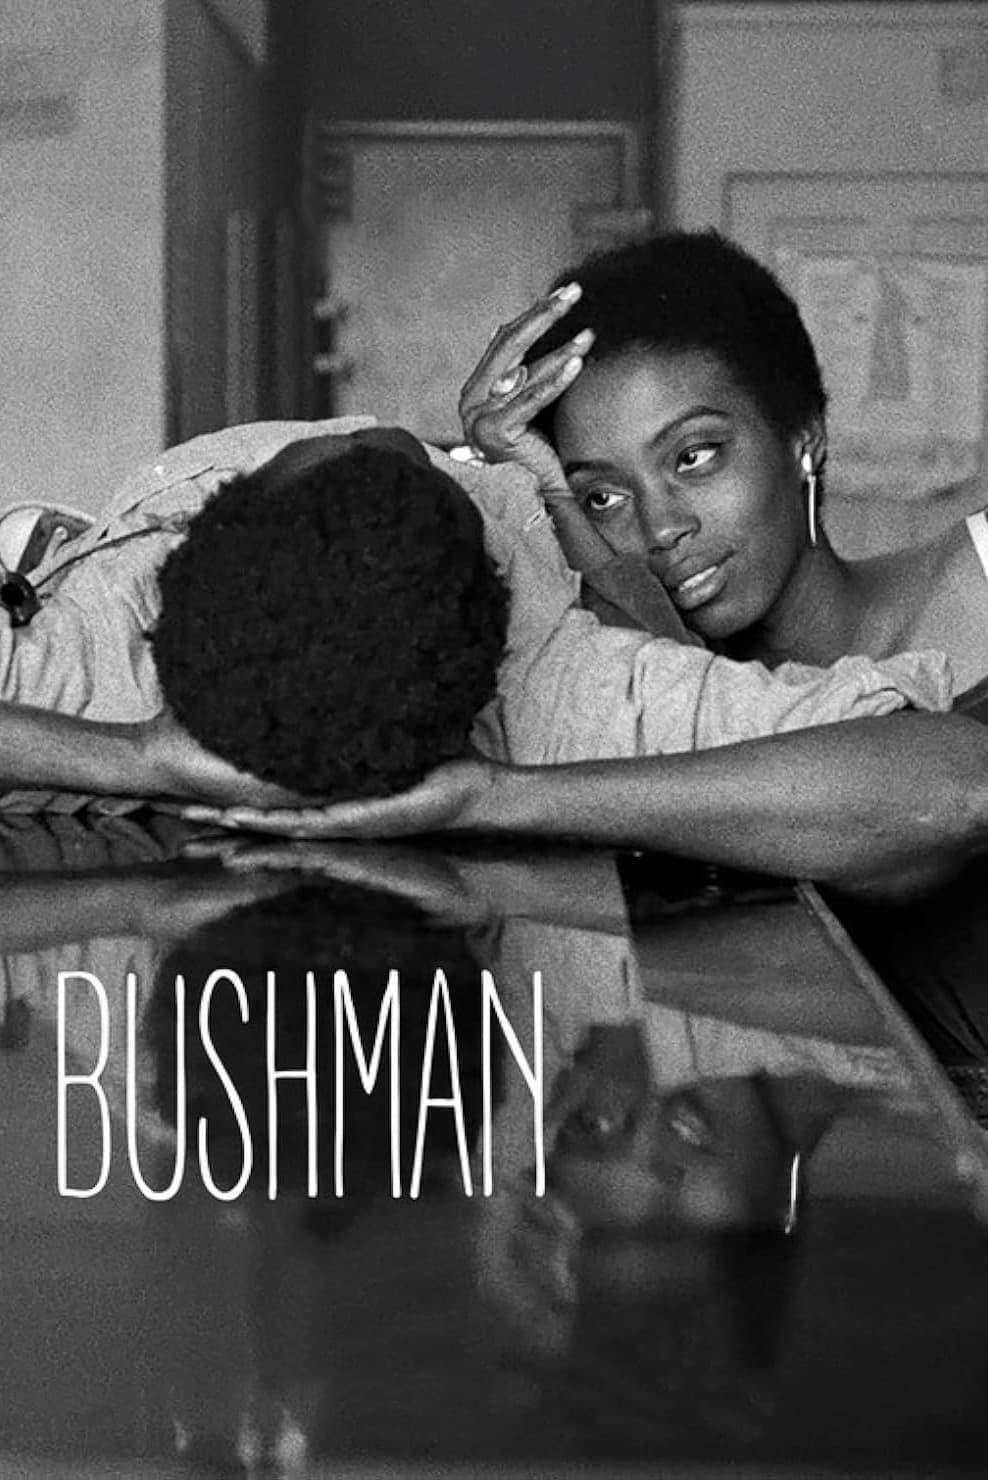 Bushman poster